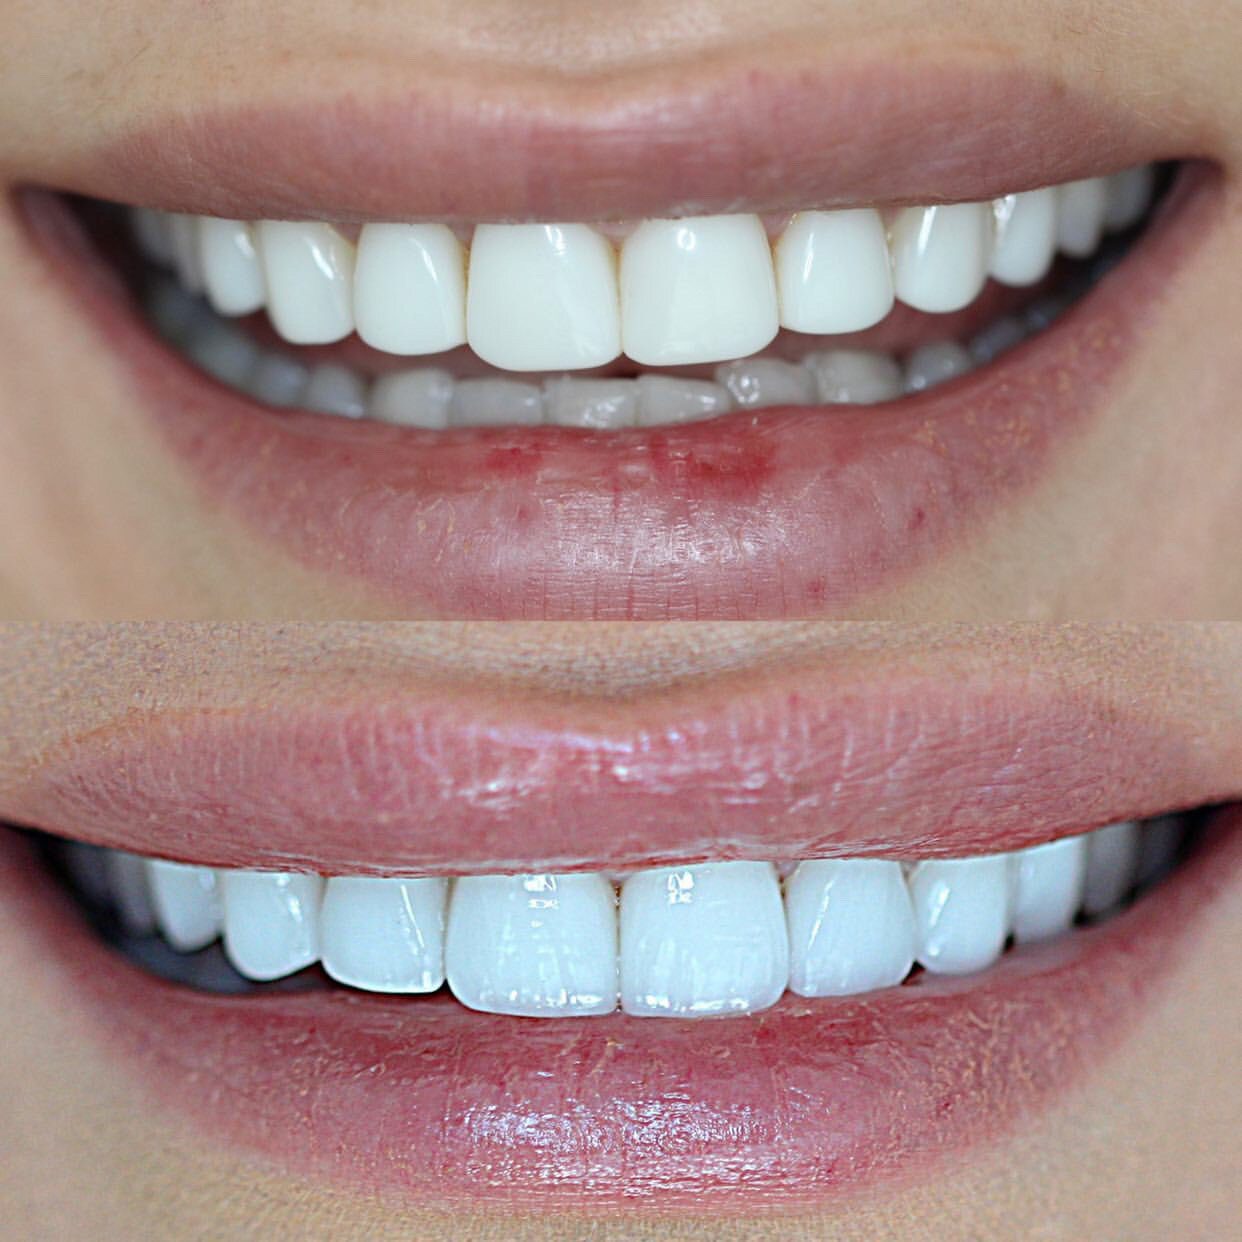 تفاوت روکش دندان و کامپوزیت از لحاظ ساختار دندانی